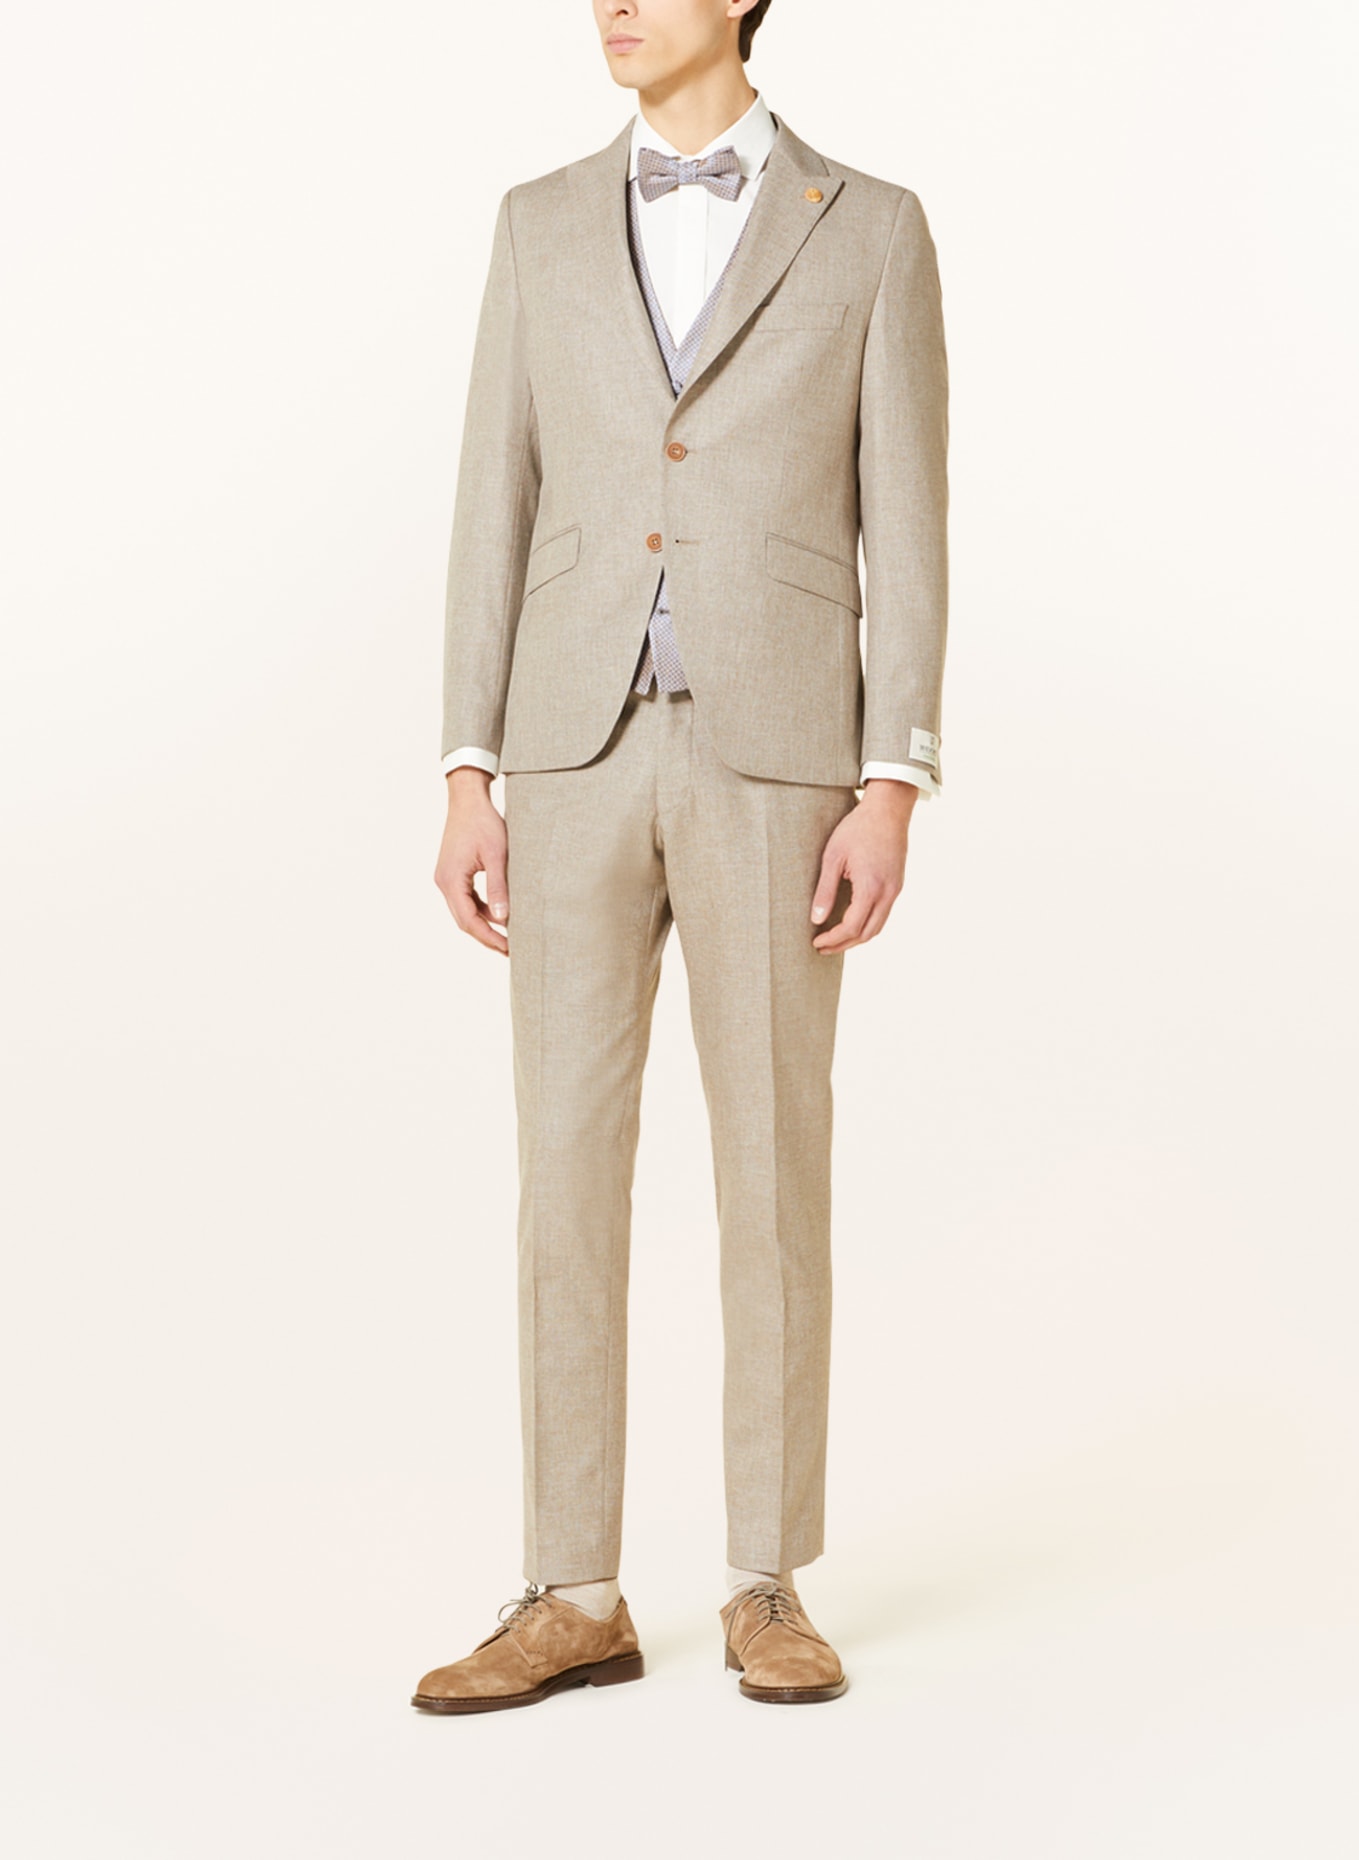 WILVORST Suit jacket extra slim fit, Color: BEIGE (Image 2)